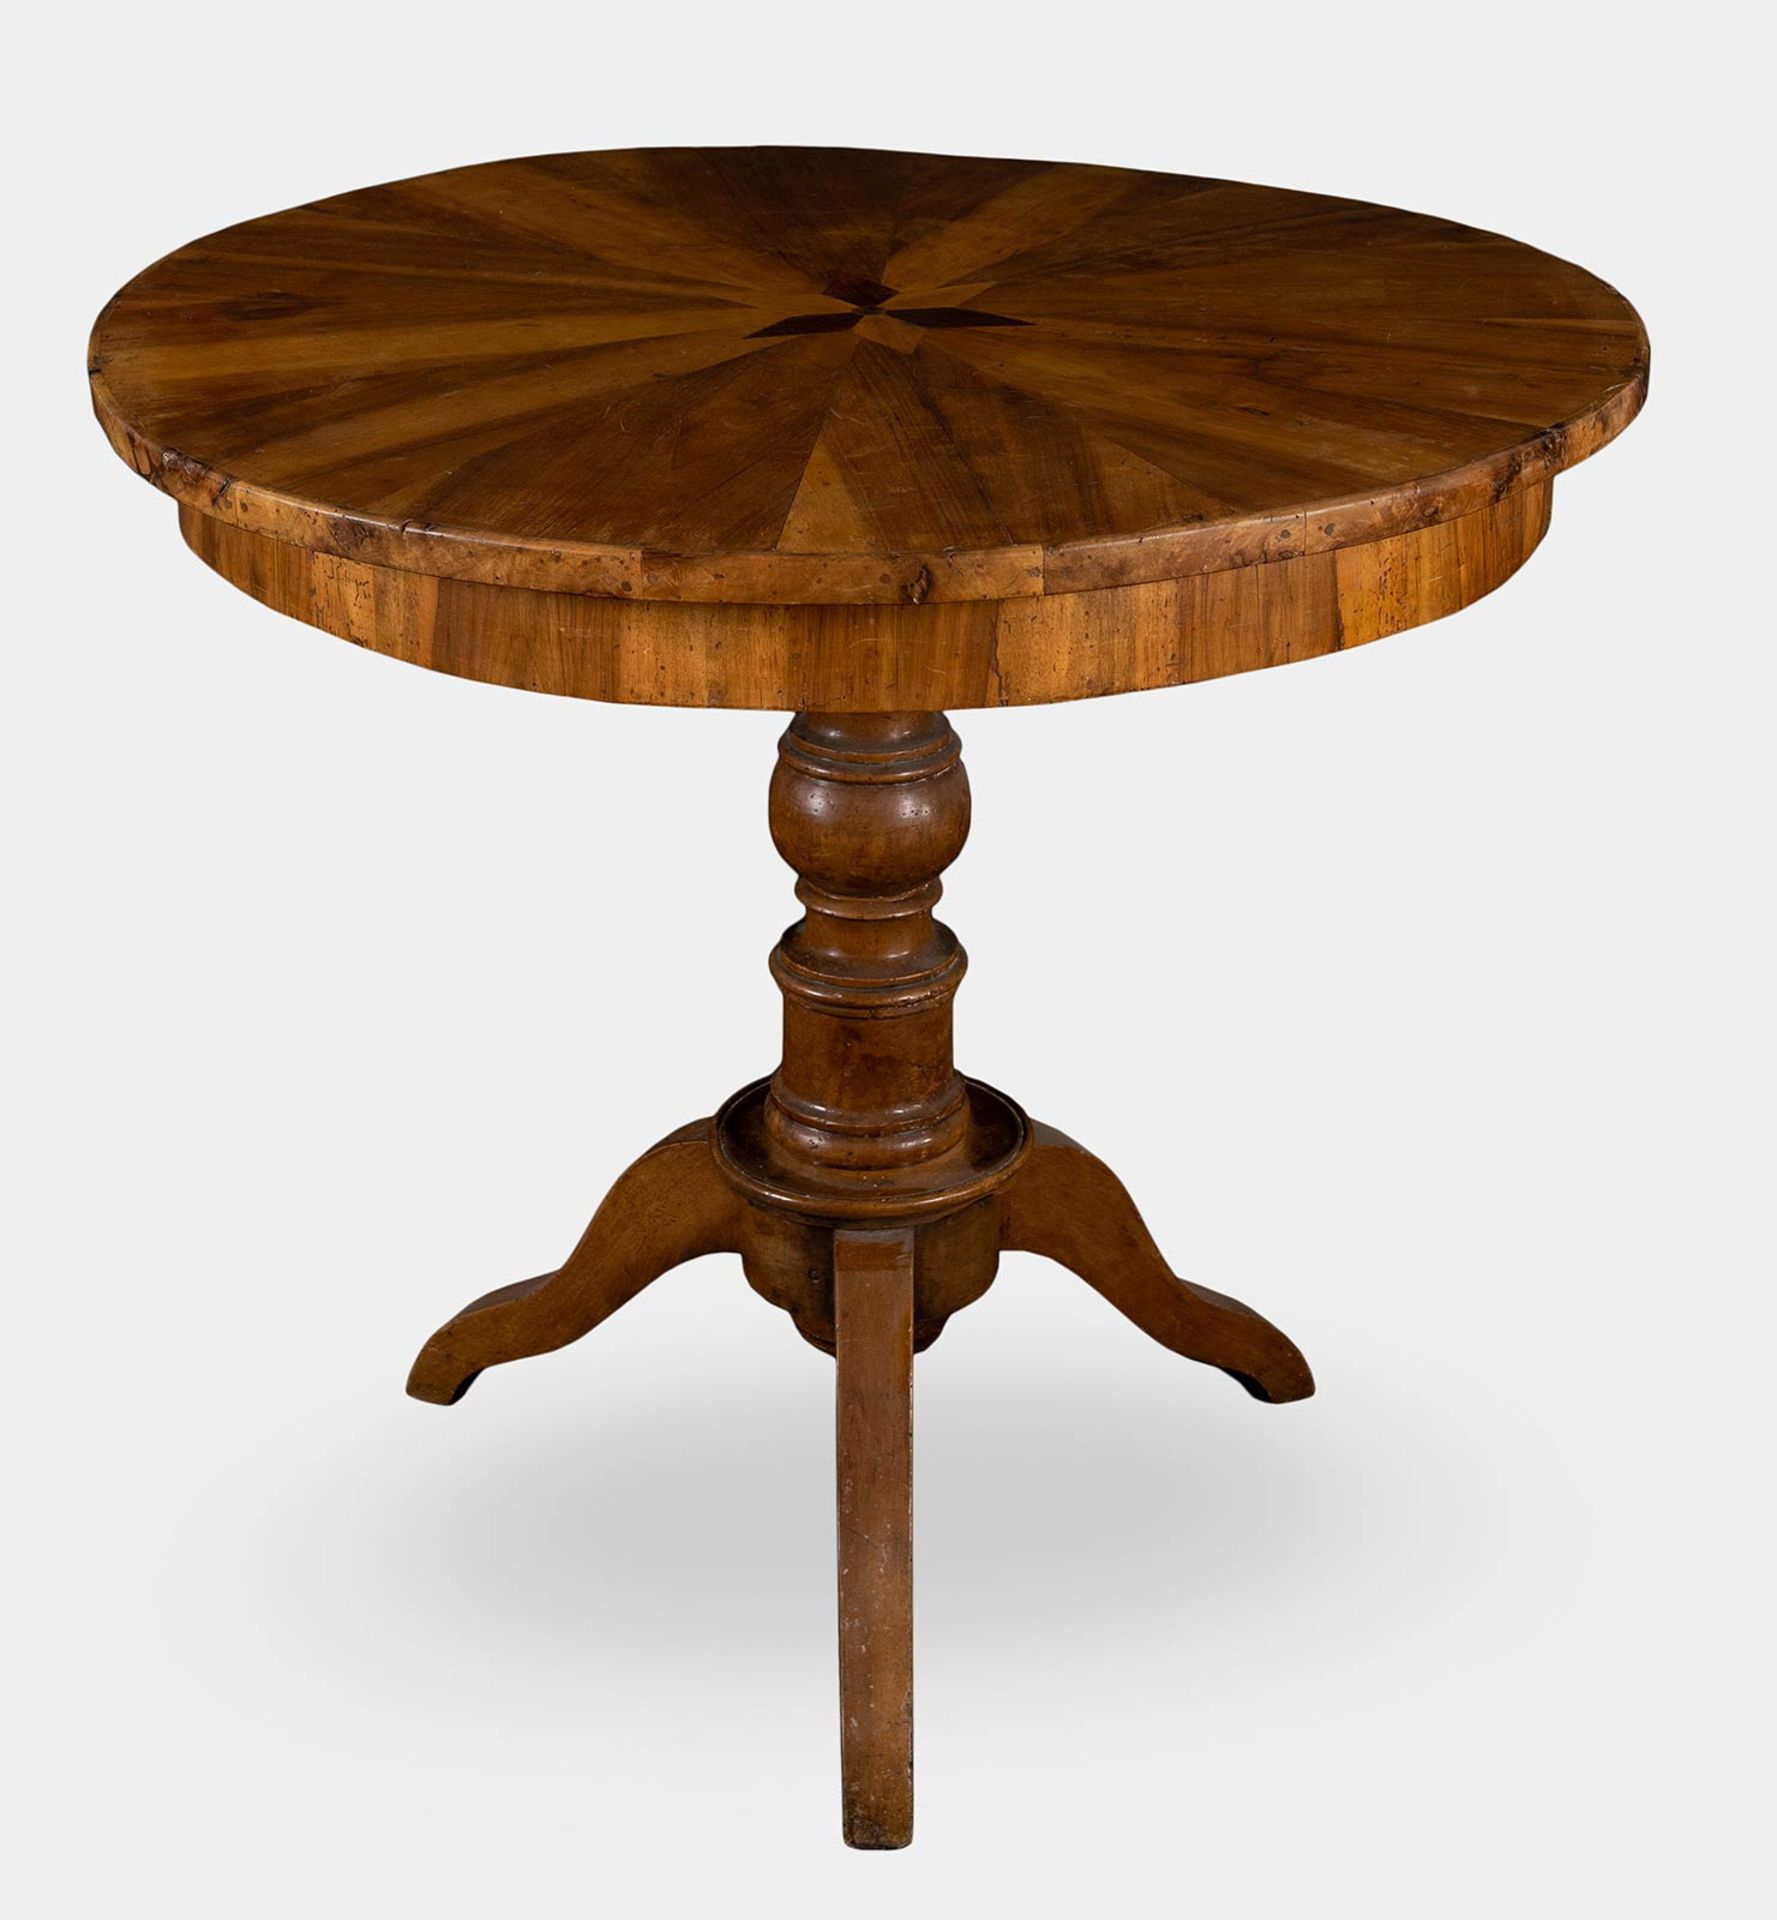 Tavolo circolare lastronato in legno di noce, XIX sec. - Image 3 of 3